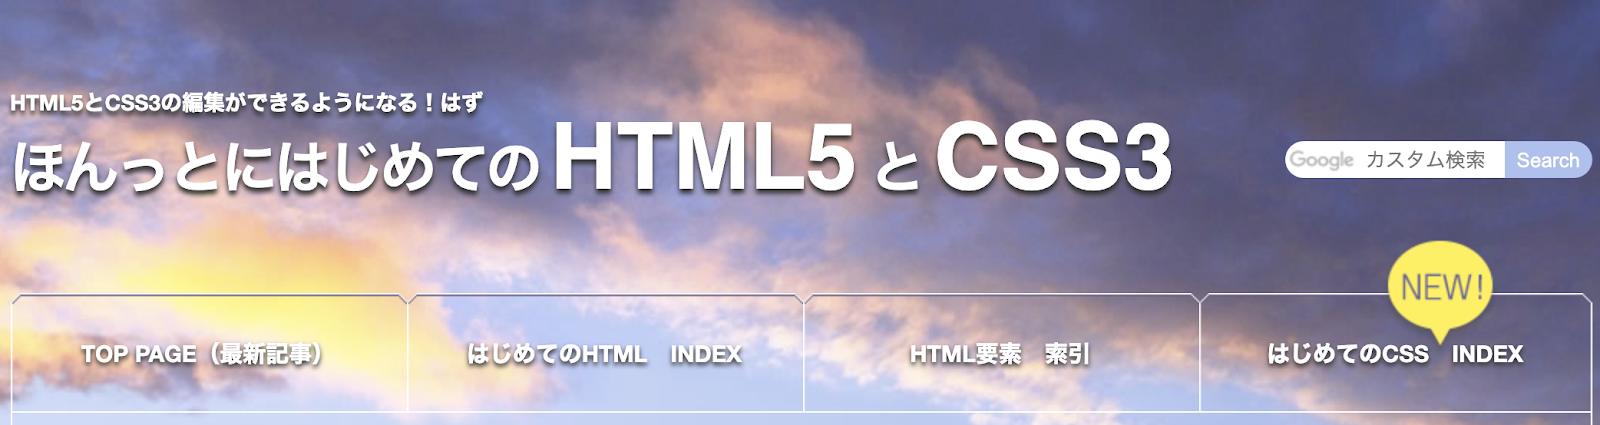 HTMLなら「ほんっとにはじめてのHTML5」